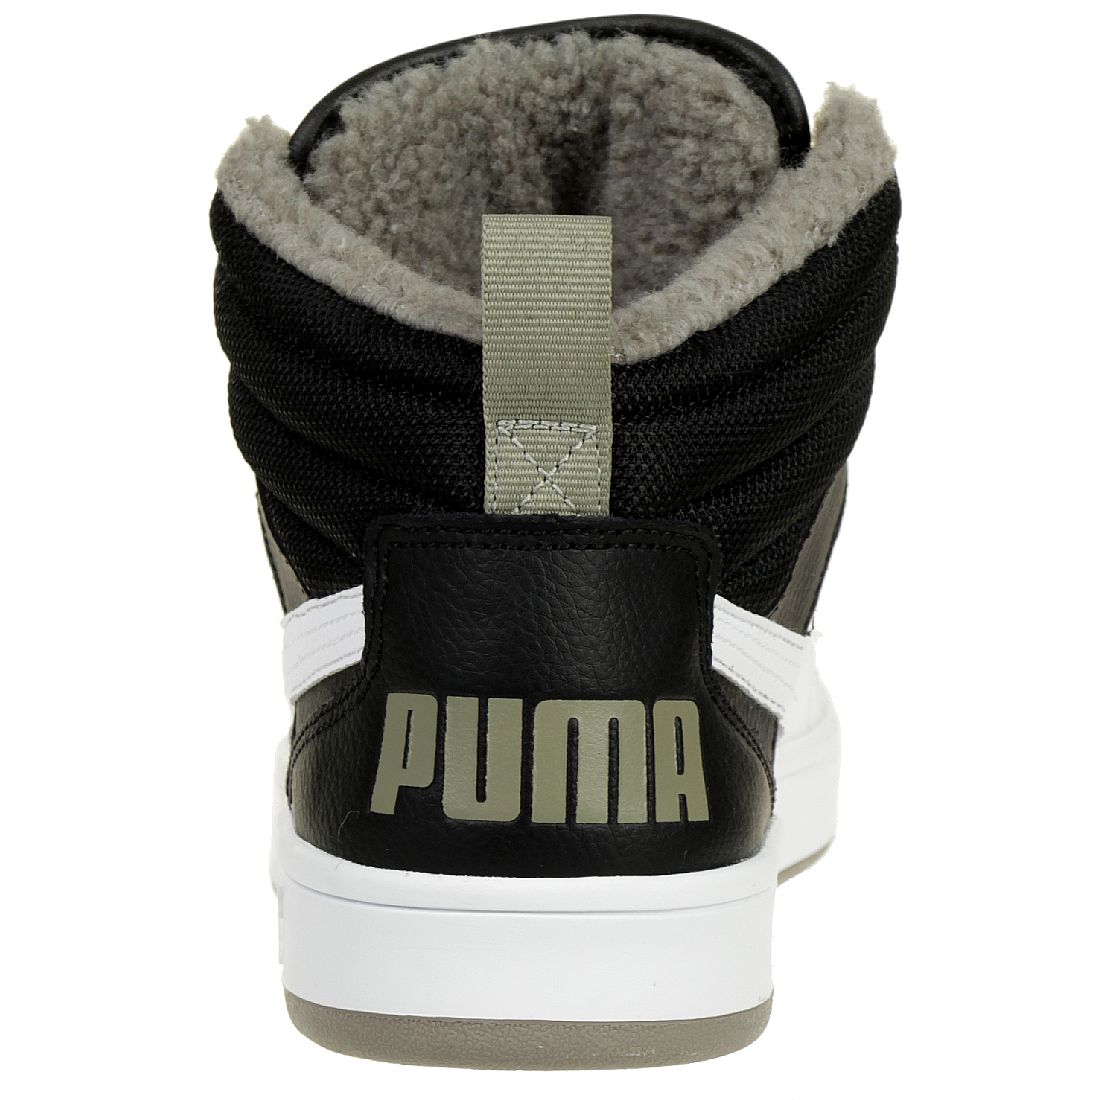 Puma Rebound Street V2 Fur JR Winterstiefel Boots Kinder schwarz gefüttert warm